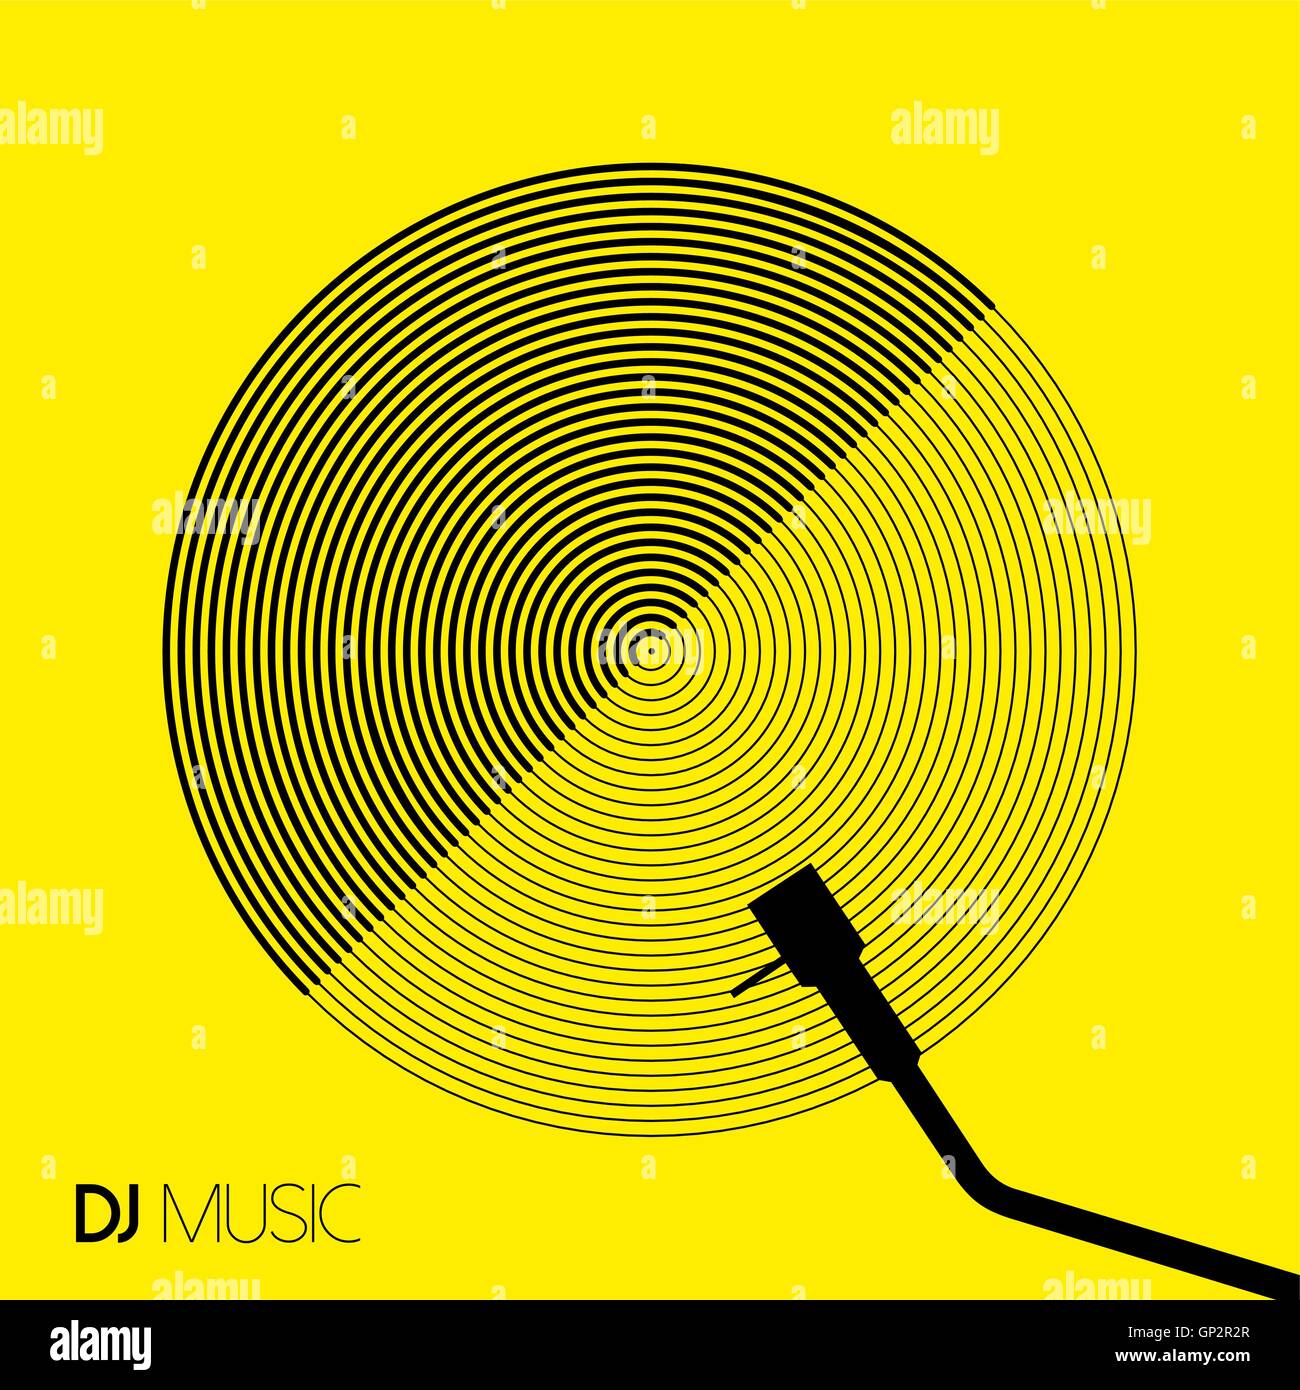 La musique de DJ concept en ligne géométrique style art moderne design avec disque de vinyle. Vecteur EPS10. Illustration de Vecteur